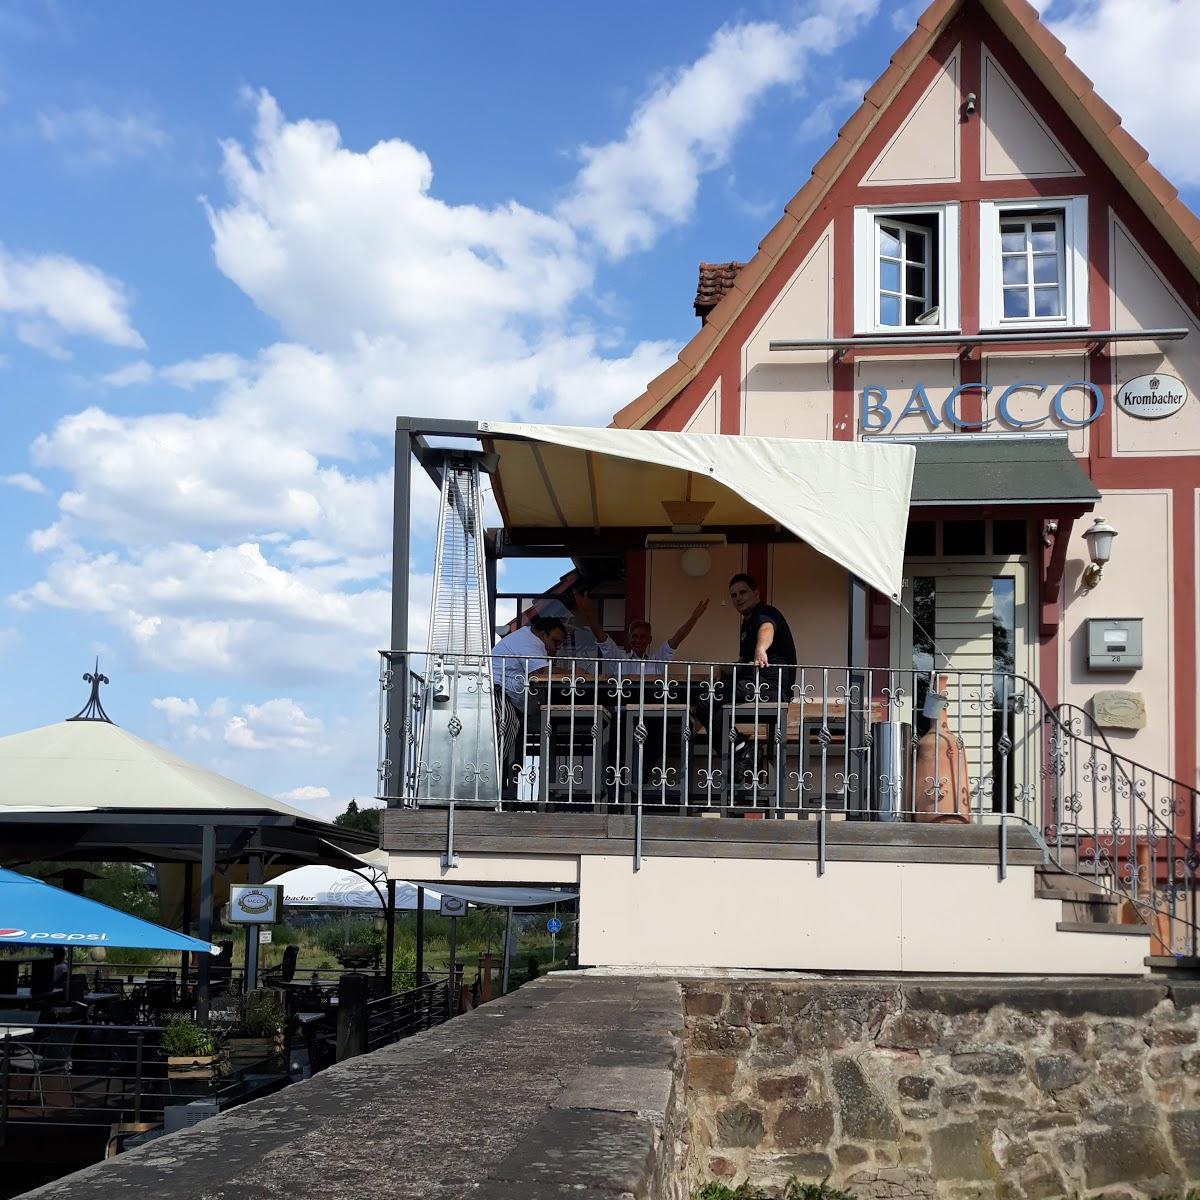 Restaurant "Bacco Wein u. Snackbar" in Rotenburg an der Fulda